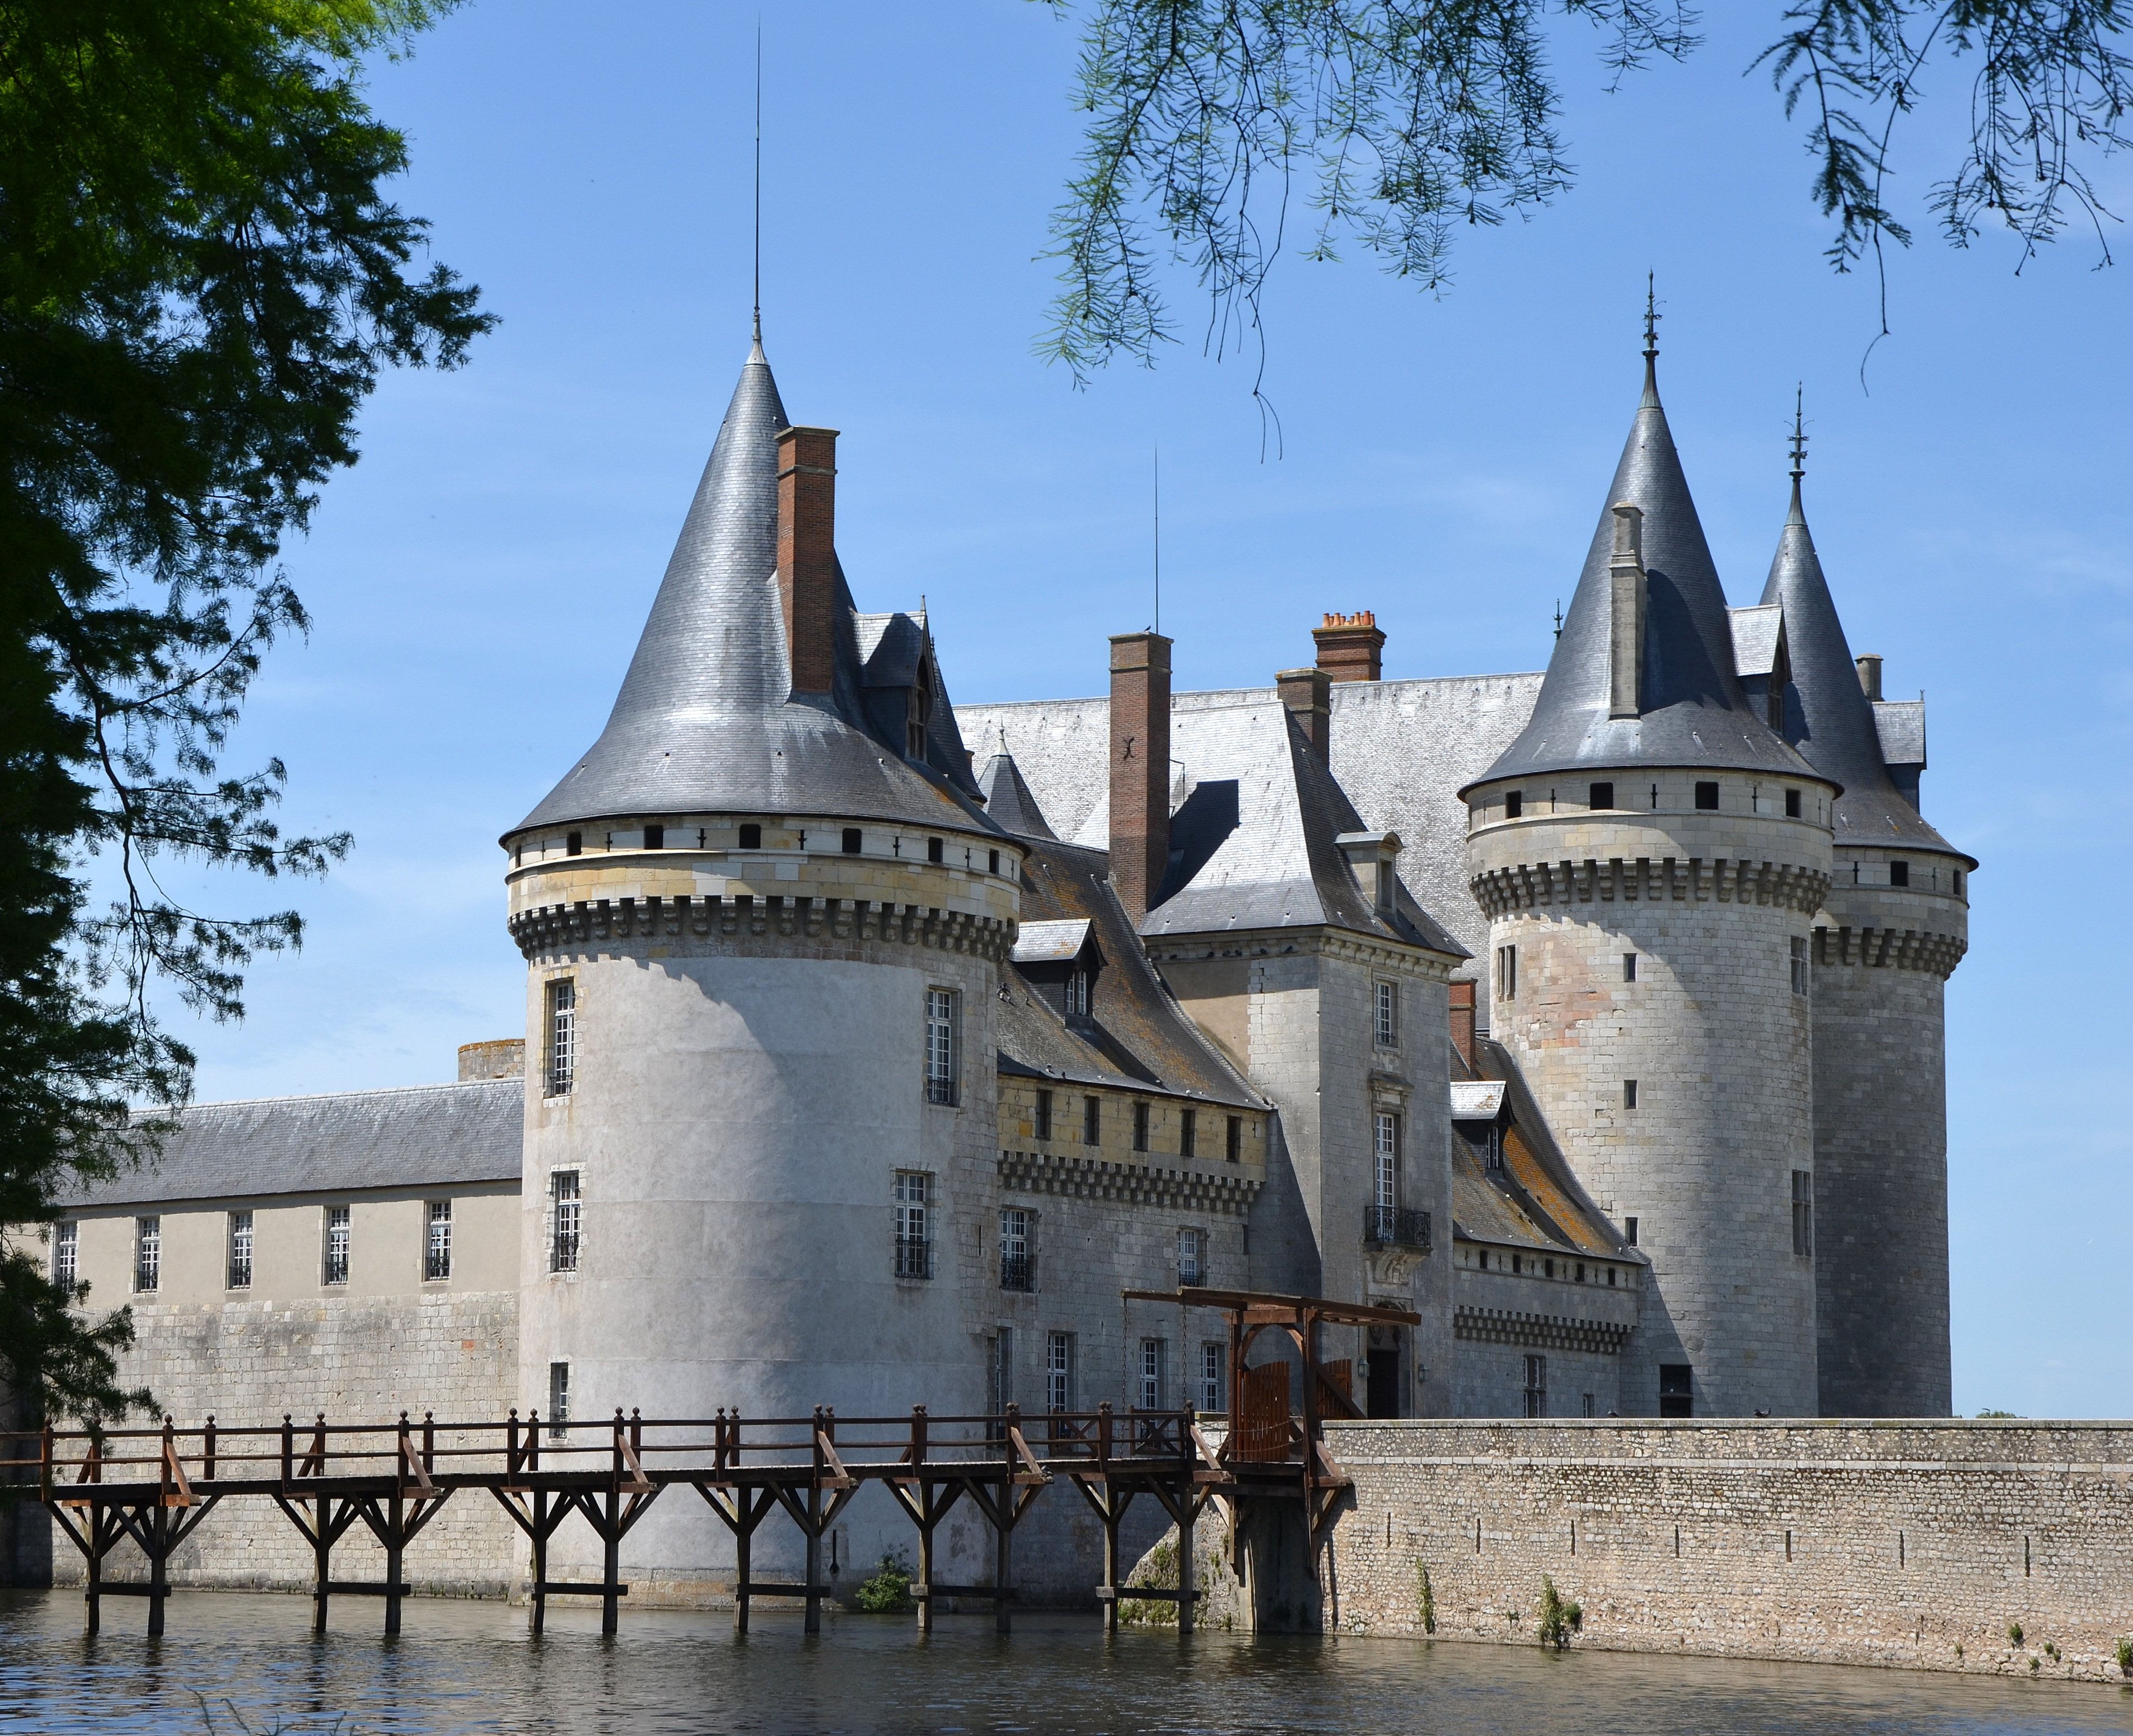 Château De Sully-sur-Loire Pics, Man Made Collection